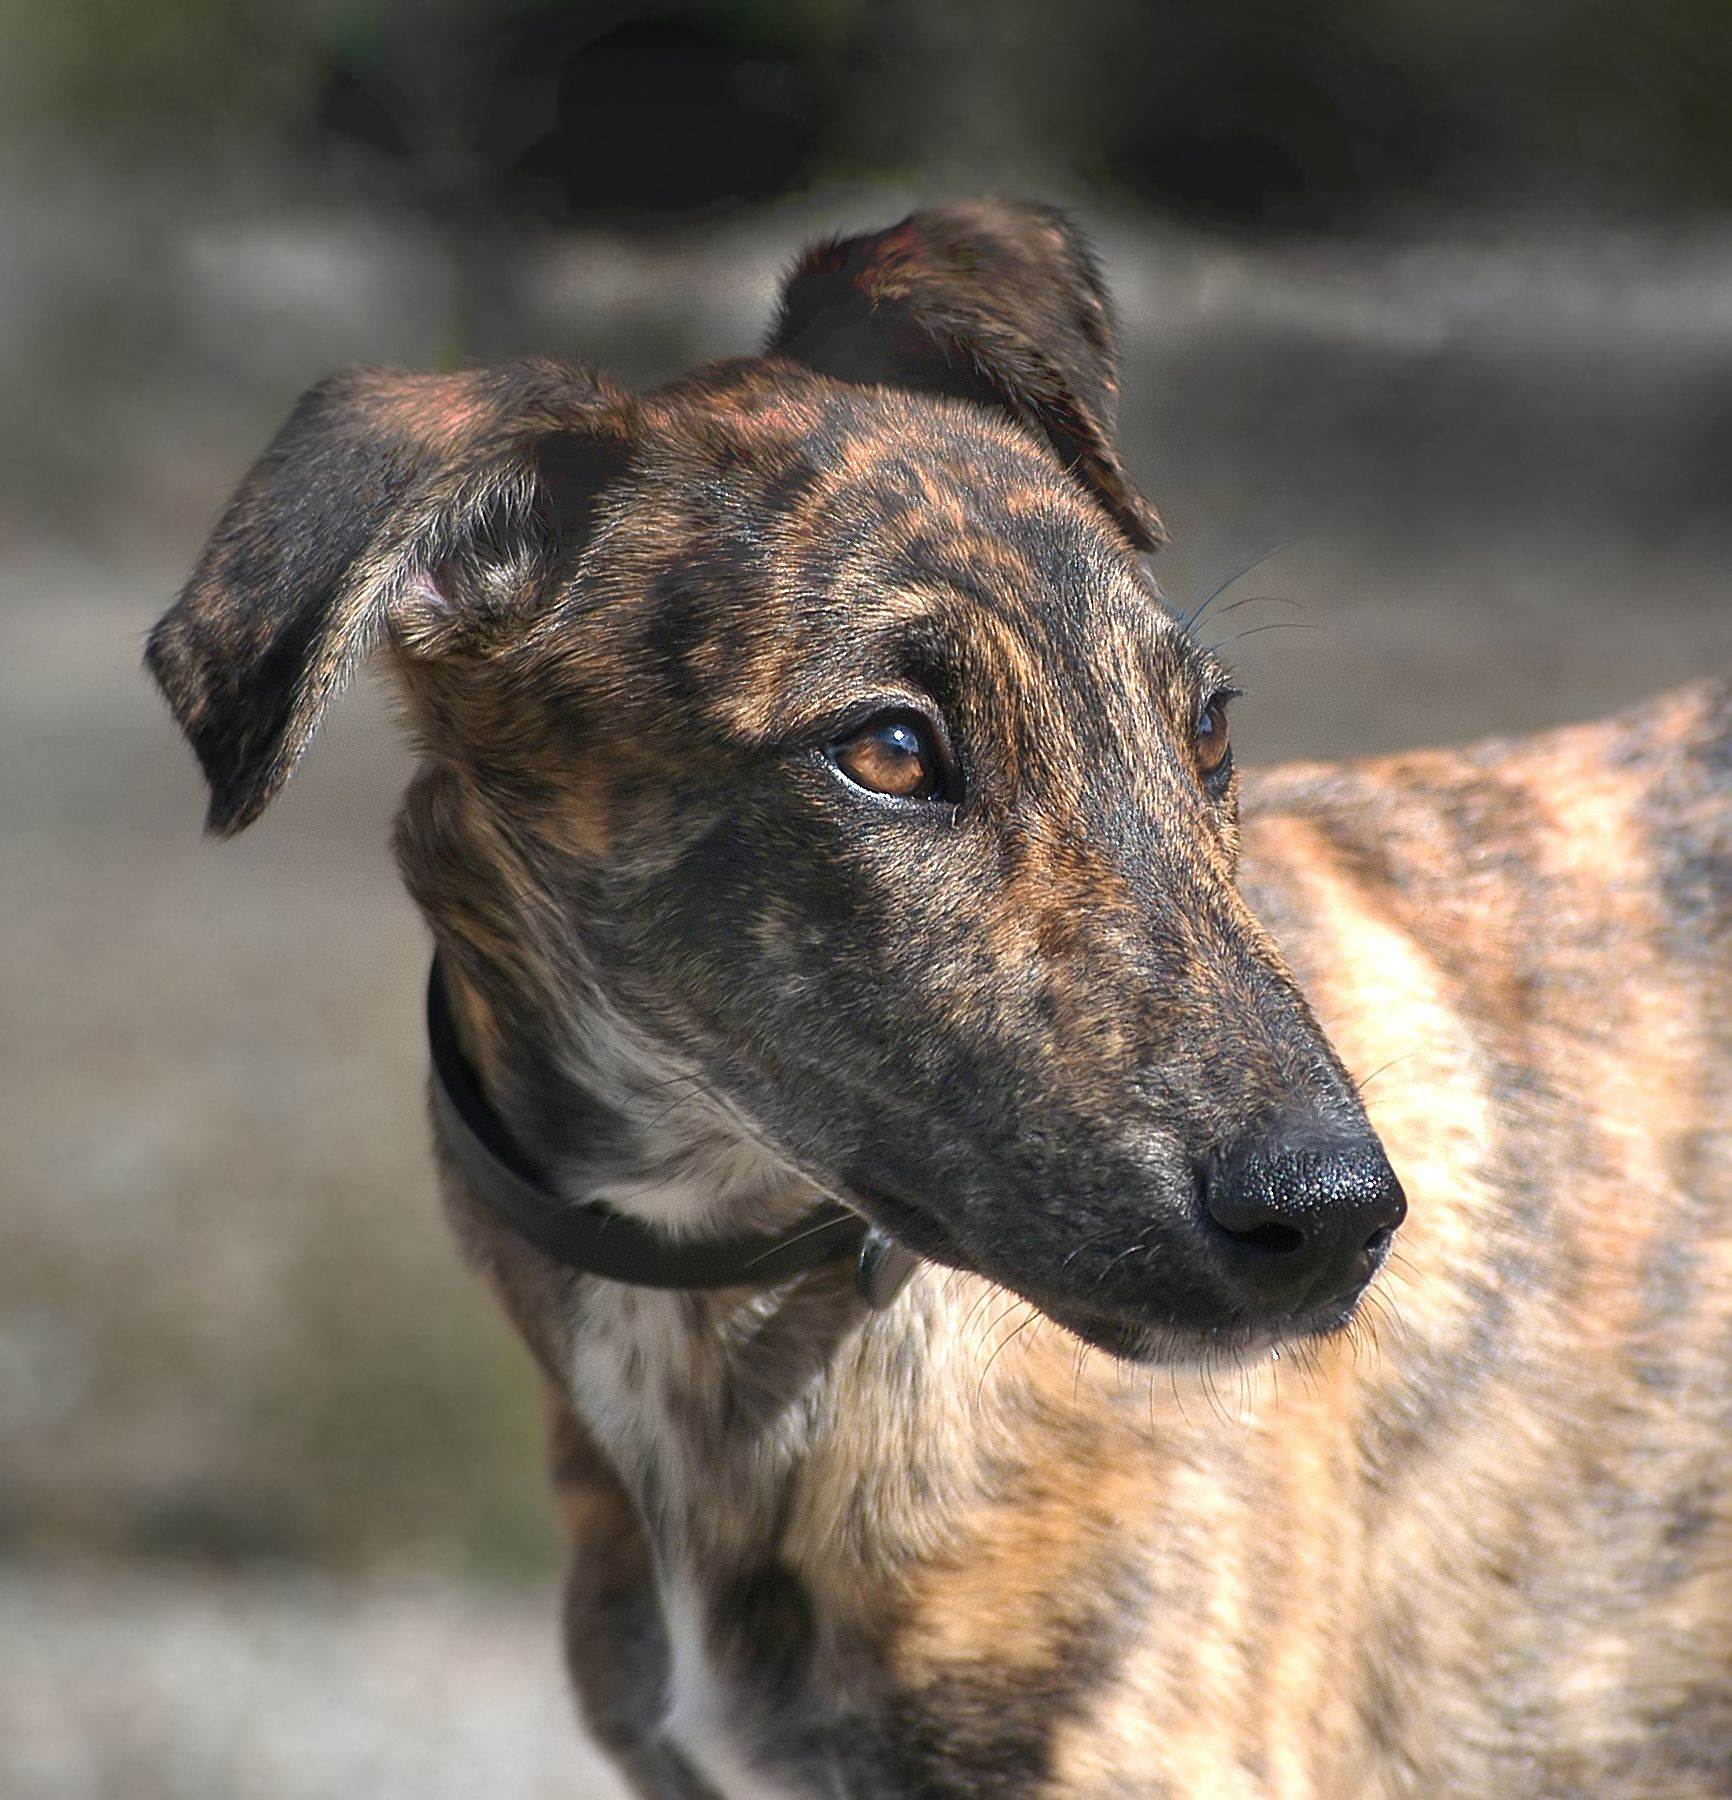 Борзая собака: породы с описанием и фото, охота с борзыми